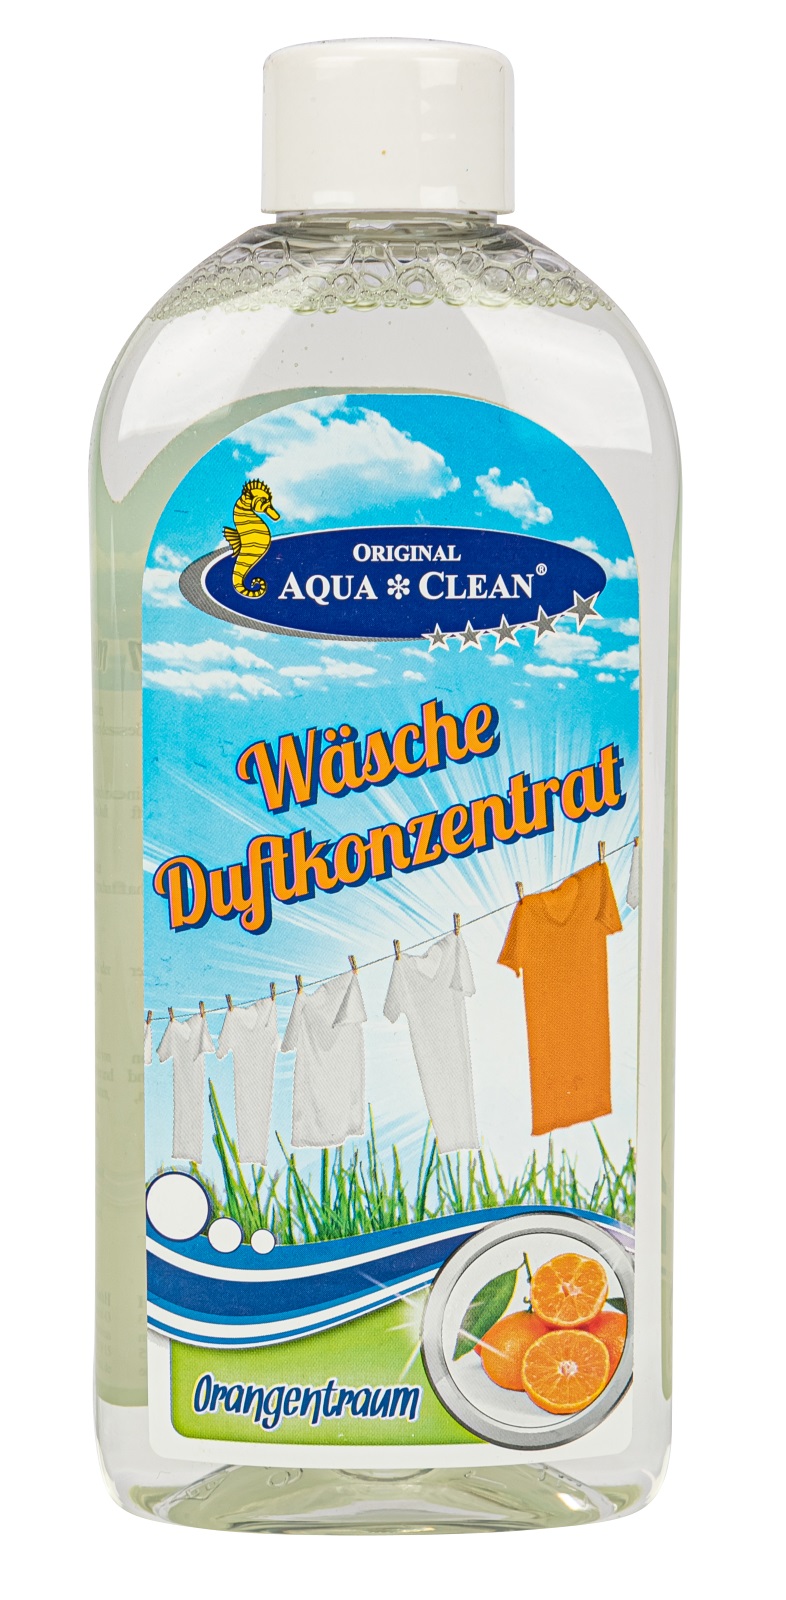 AQUA CLEAN PUR Wäsche Duftkonzentrat 250ml Orangentraum